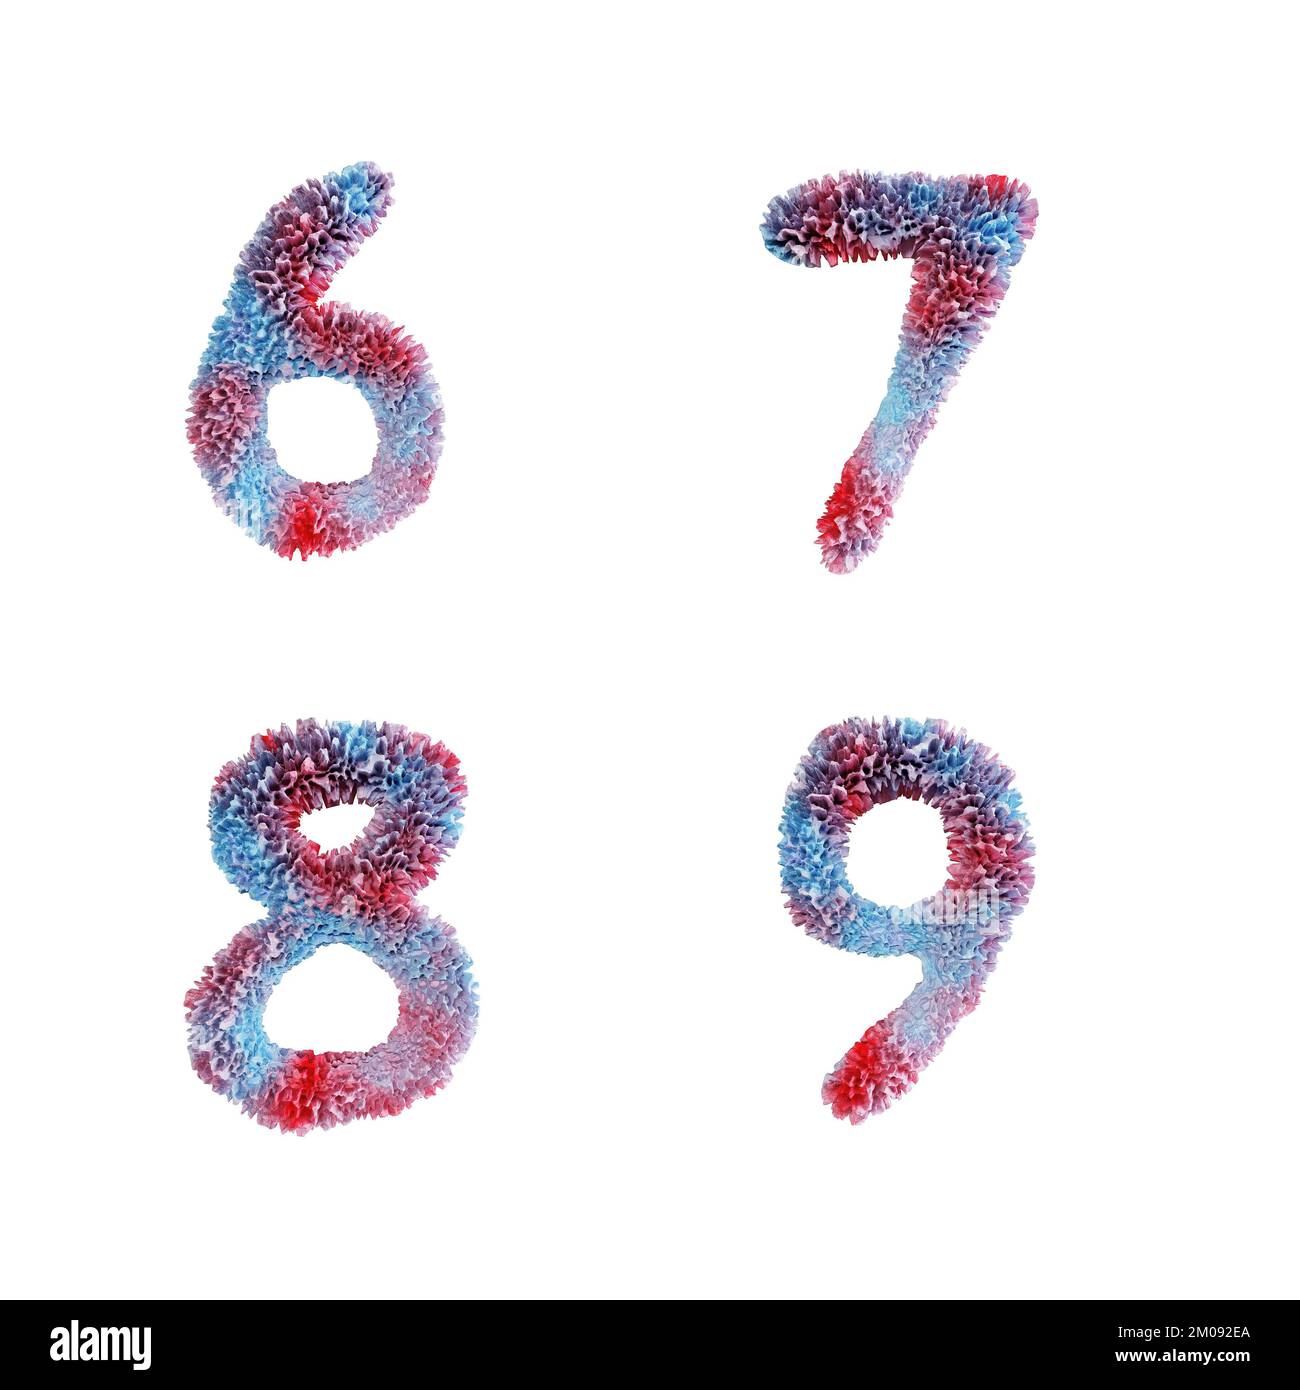 3D rappresentazione dell'alfabeto maiuscolo della barriera corallina - cifre 6-9 Foto Stock